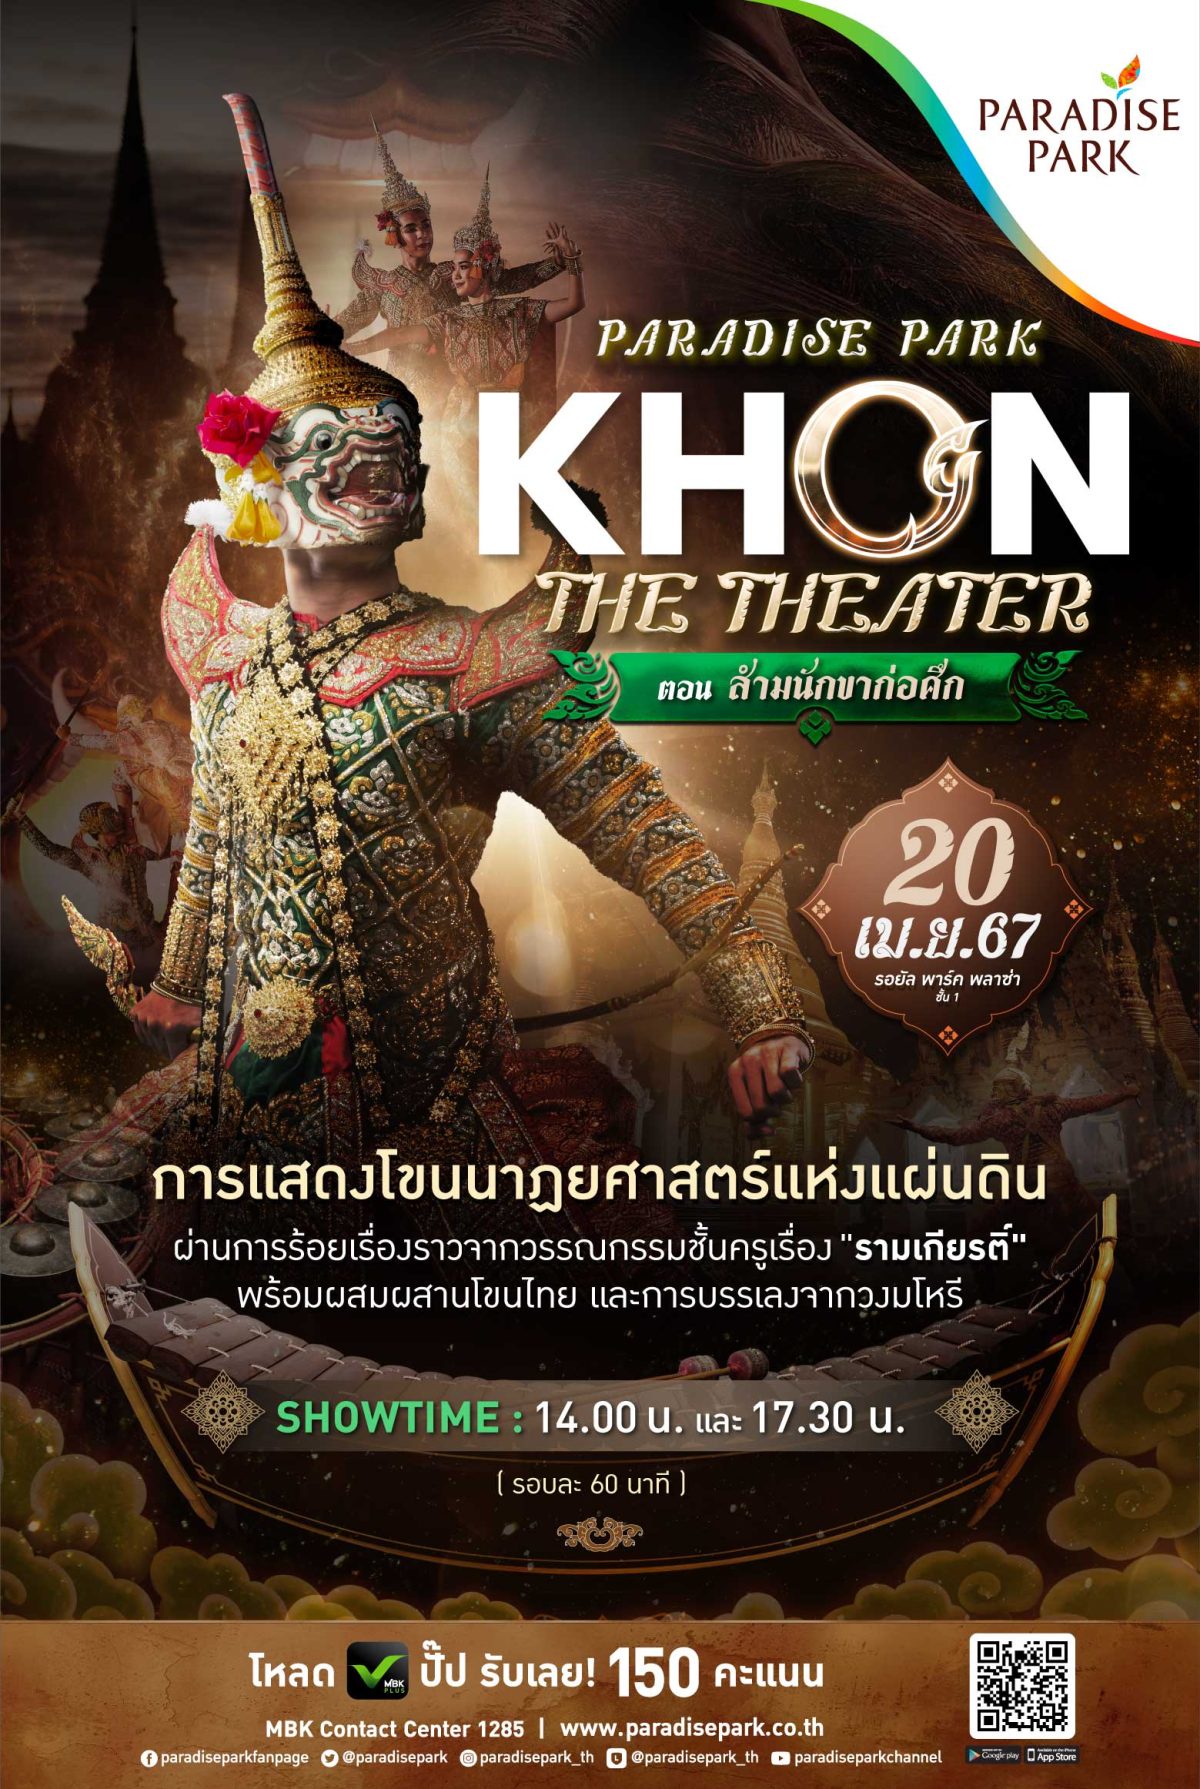 20 เม.ย. นี้ พาราไดซ์ พาร์ค ชวนคุณมาตระตากับการแสดงสุดยิ่งใหญ่ สัมผัสมรดกภูมิปัญญาไทย โขนนาฏยศาสตร์แห่งแผ่นดิน PARADISE PARK KHON THE